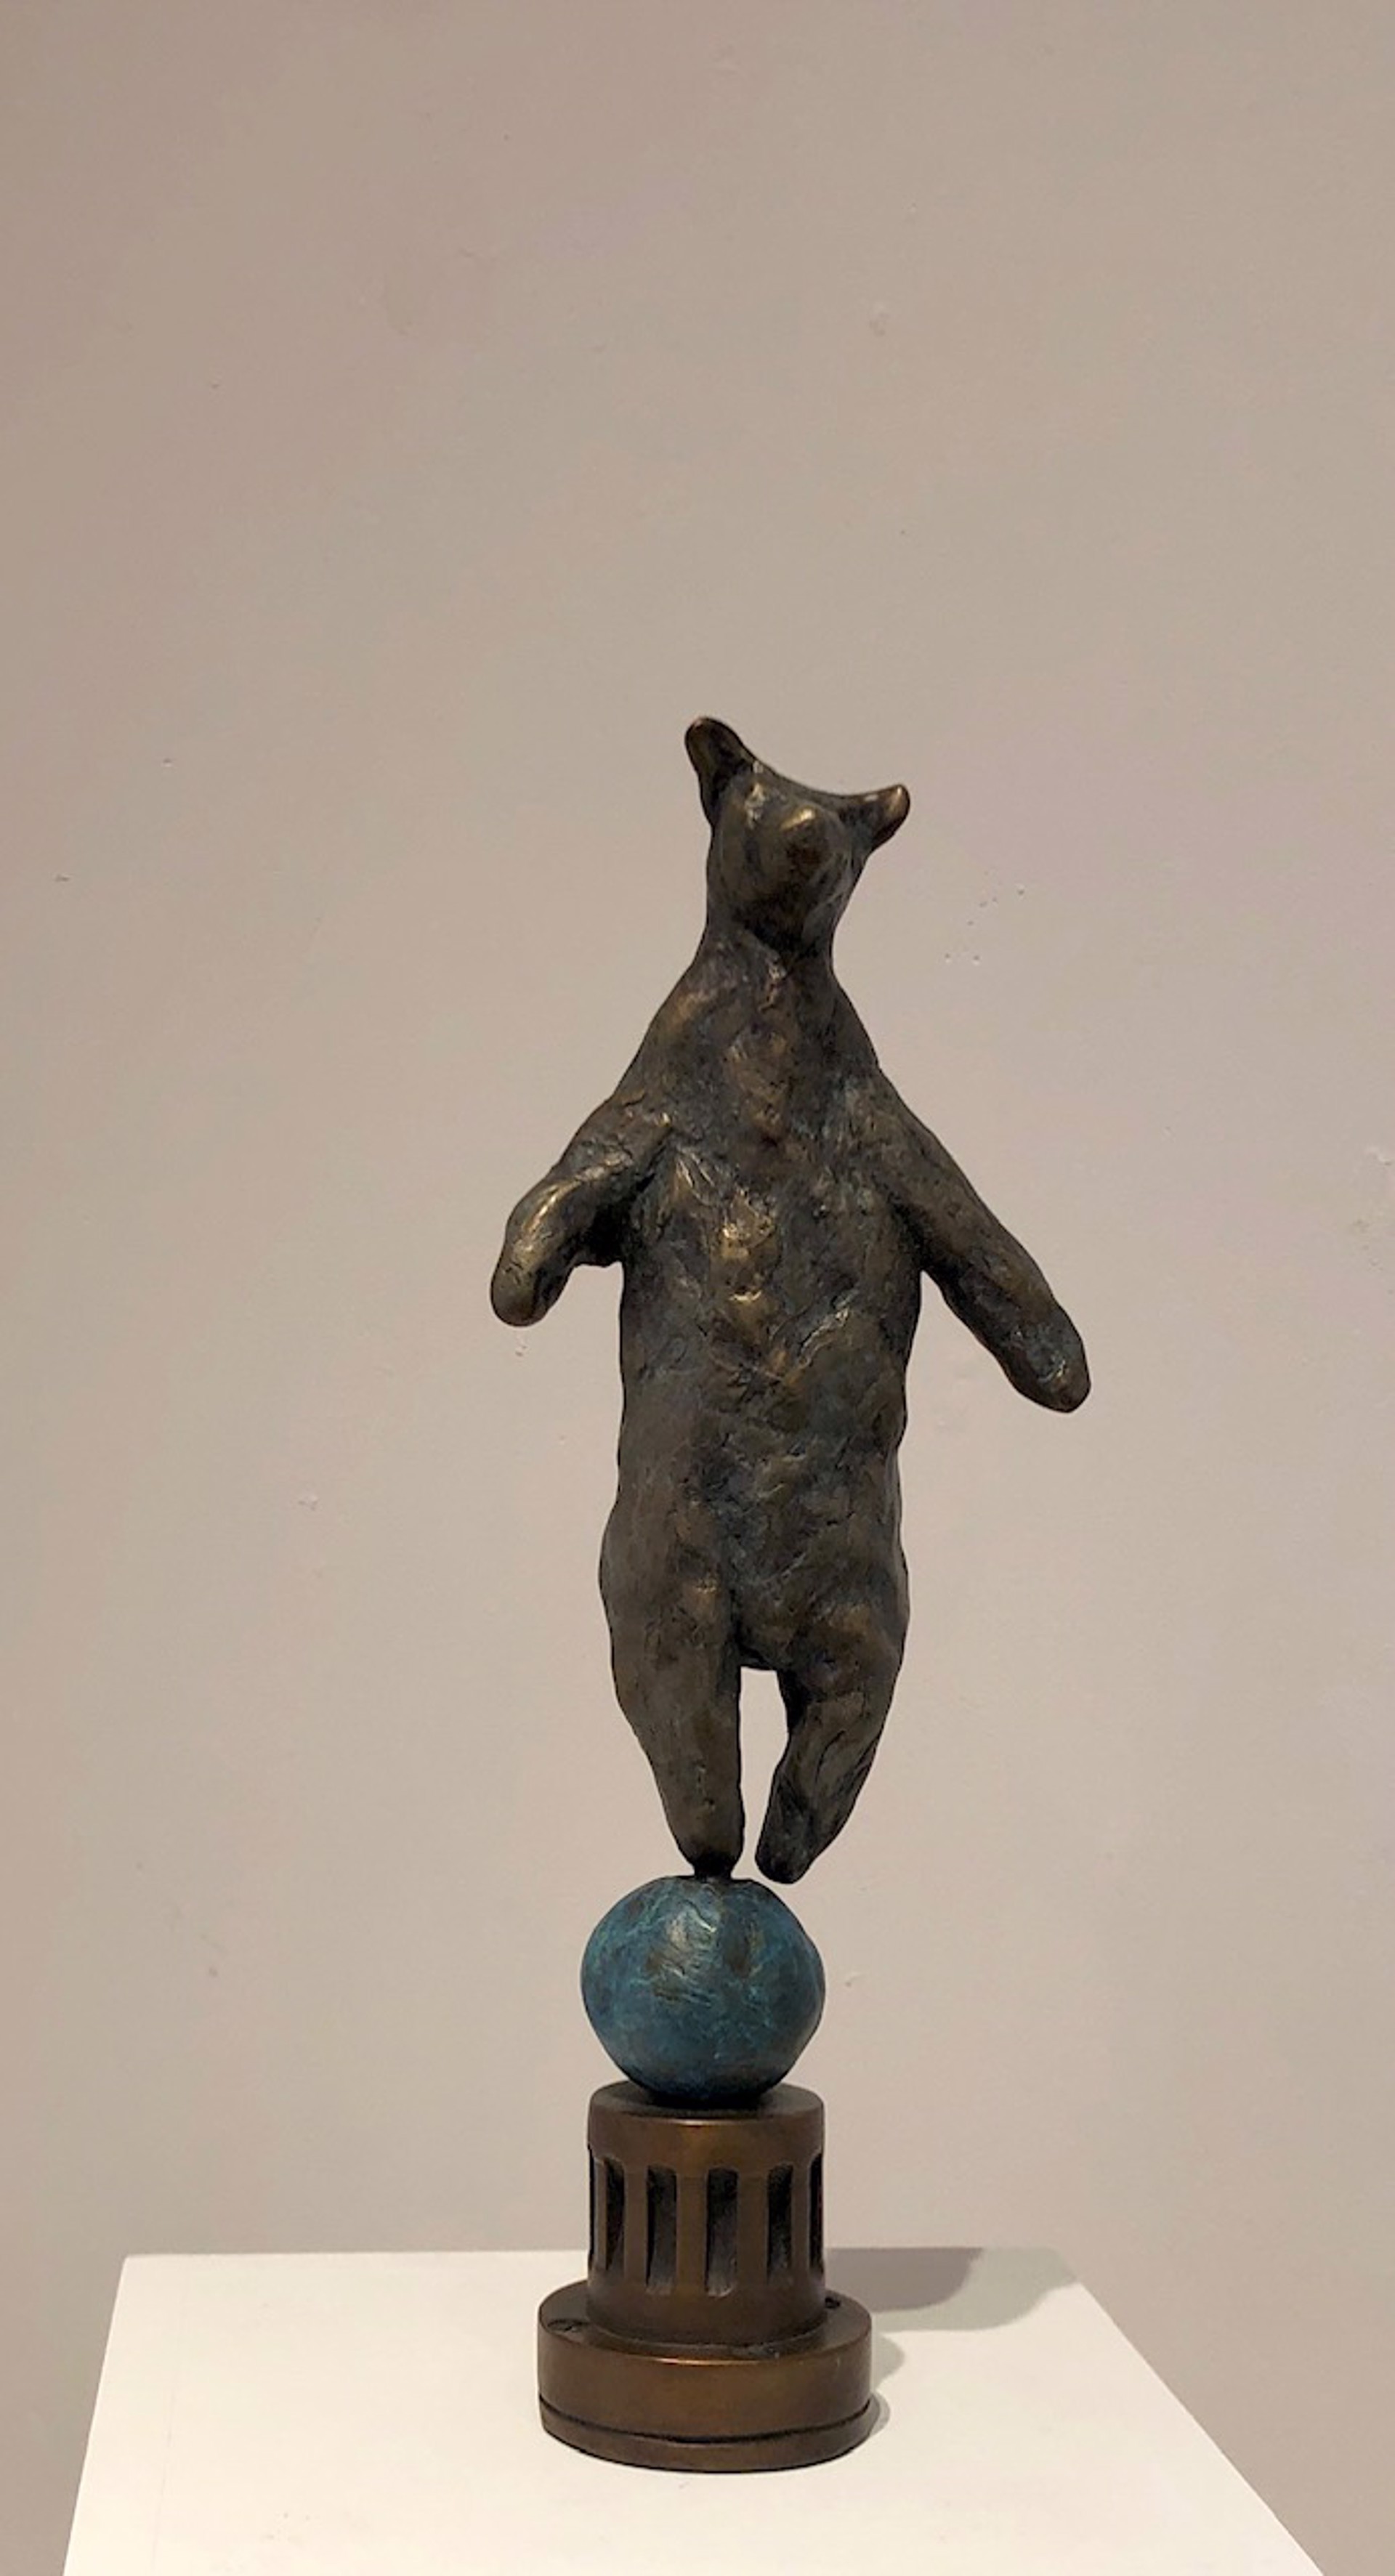 Bear on a Ball by Copper Tritscheller